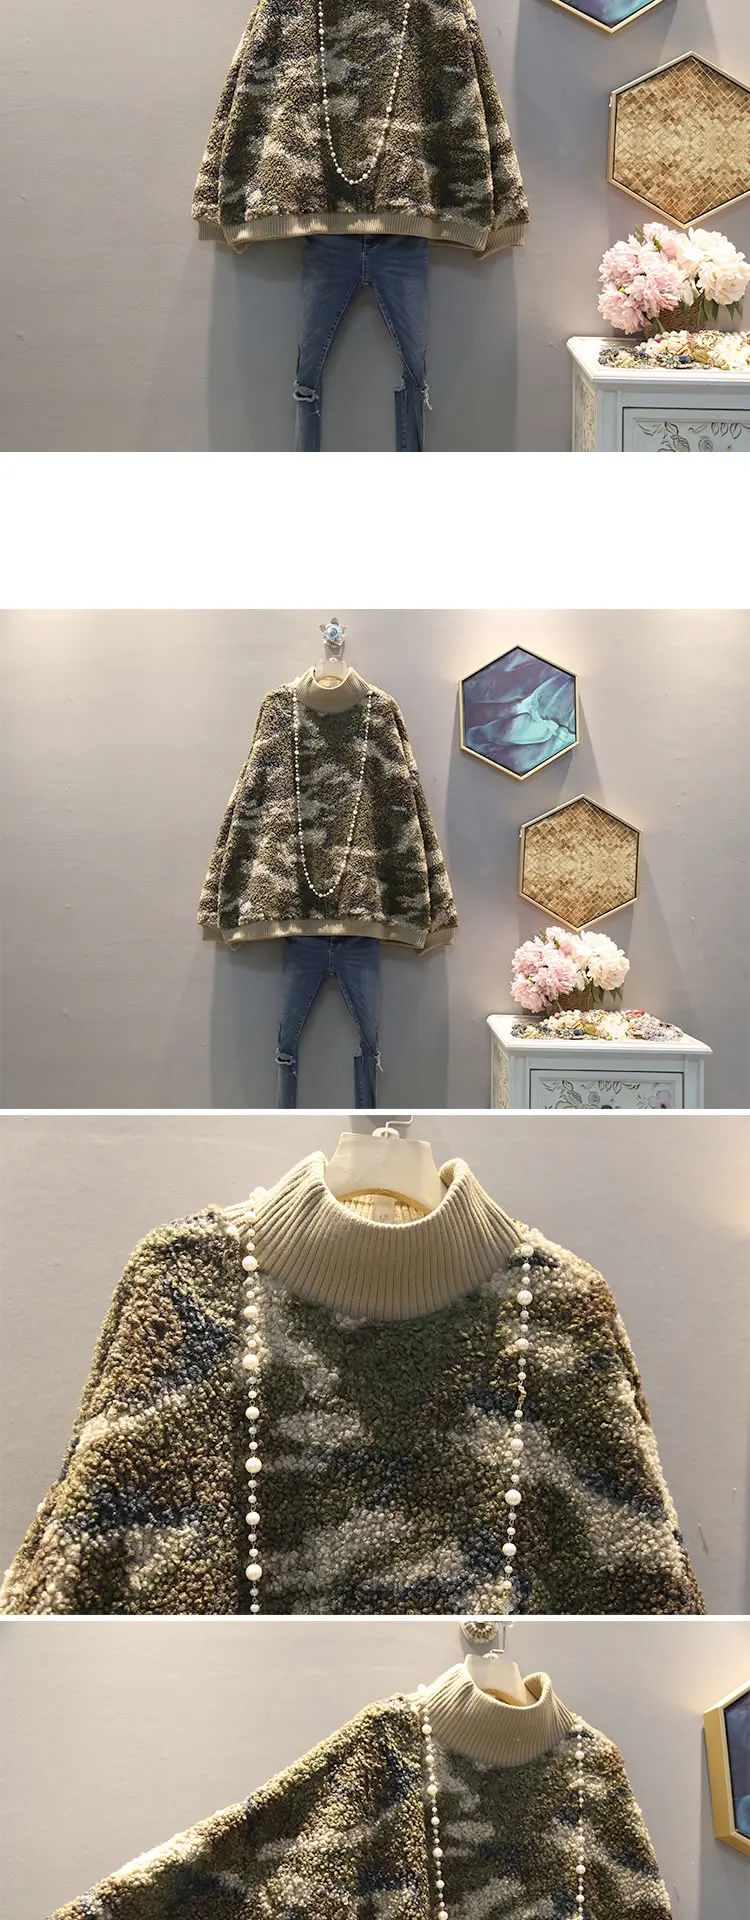 XITAO Камуфляжный свитер из овечьей шерсти корейский стиль Дикий пуловер Женская мода размера плюс осень зима водолазка трикотаж DMY1435